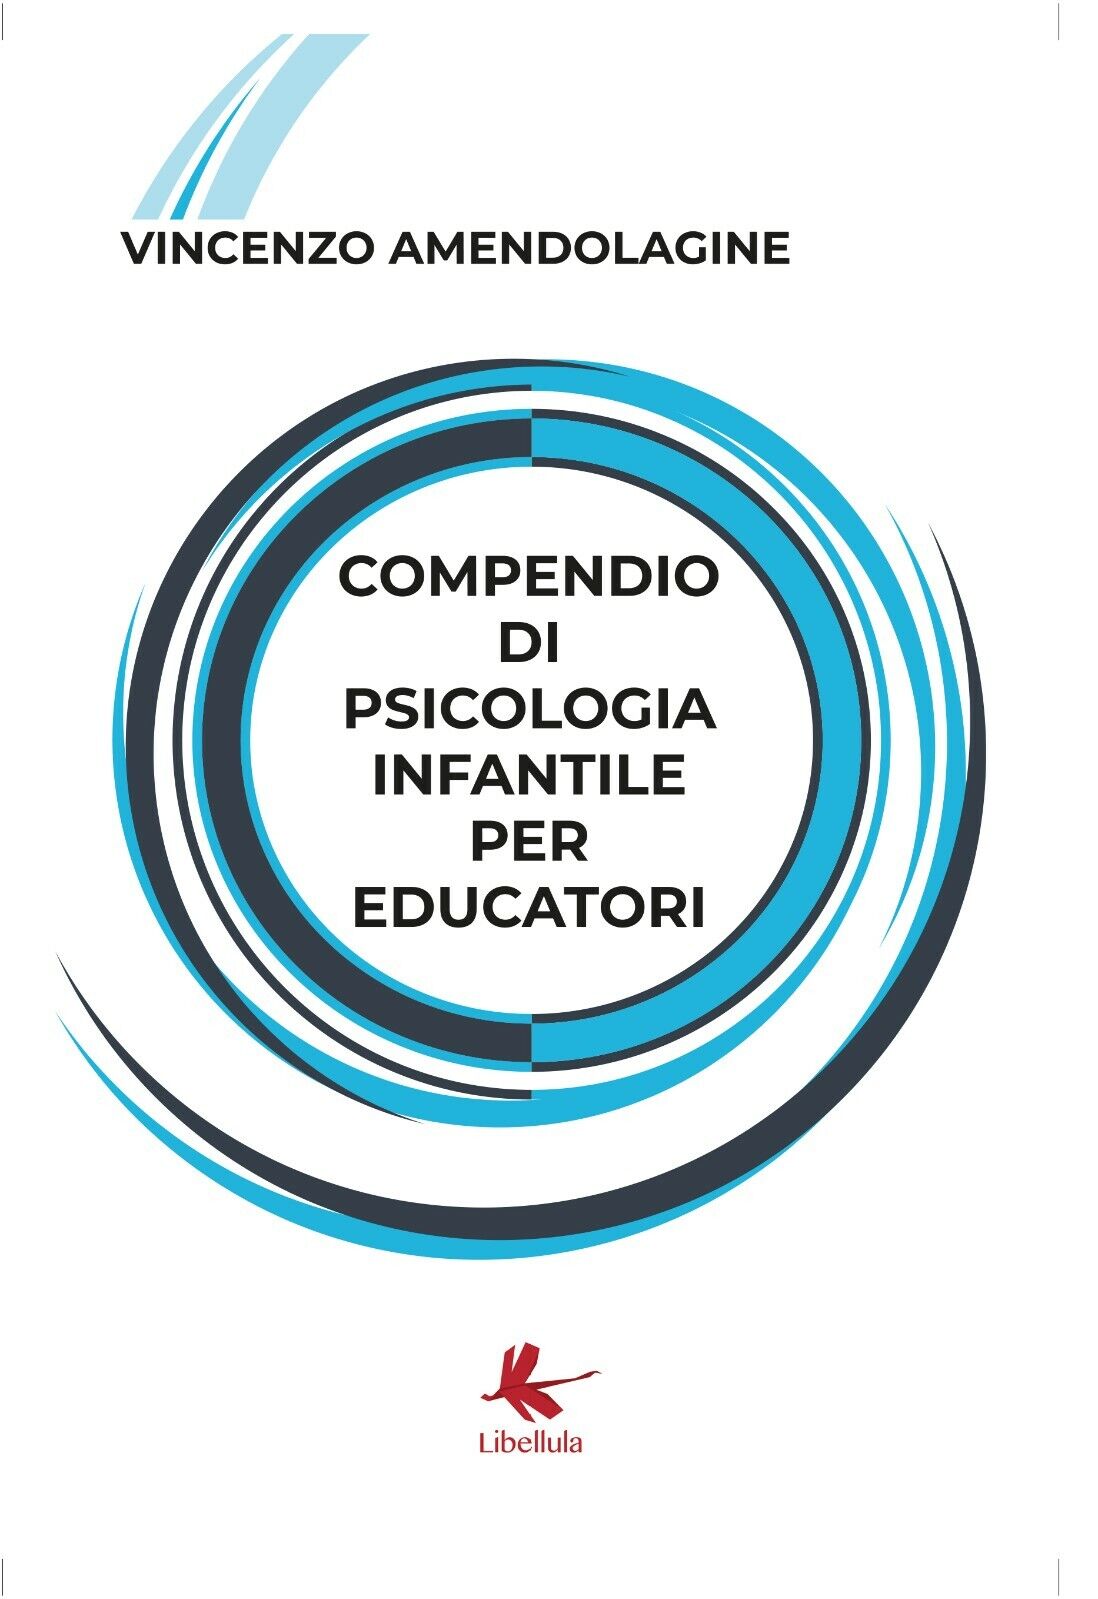 Compendio di psicologia infantile per educatori di Vincenzo Amendolagine,  2018,